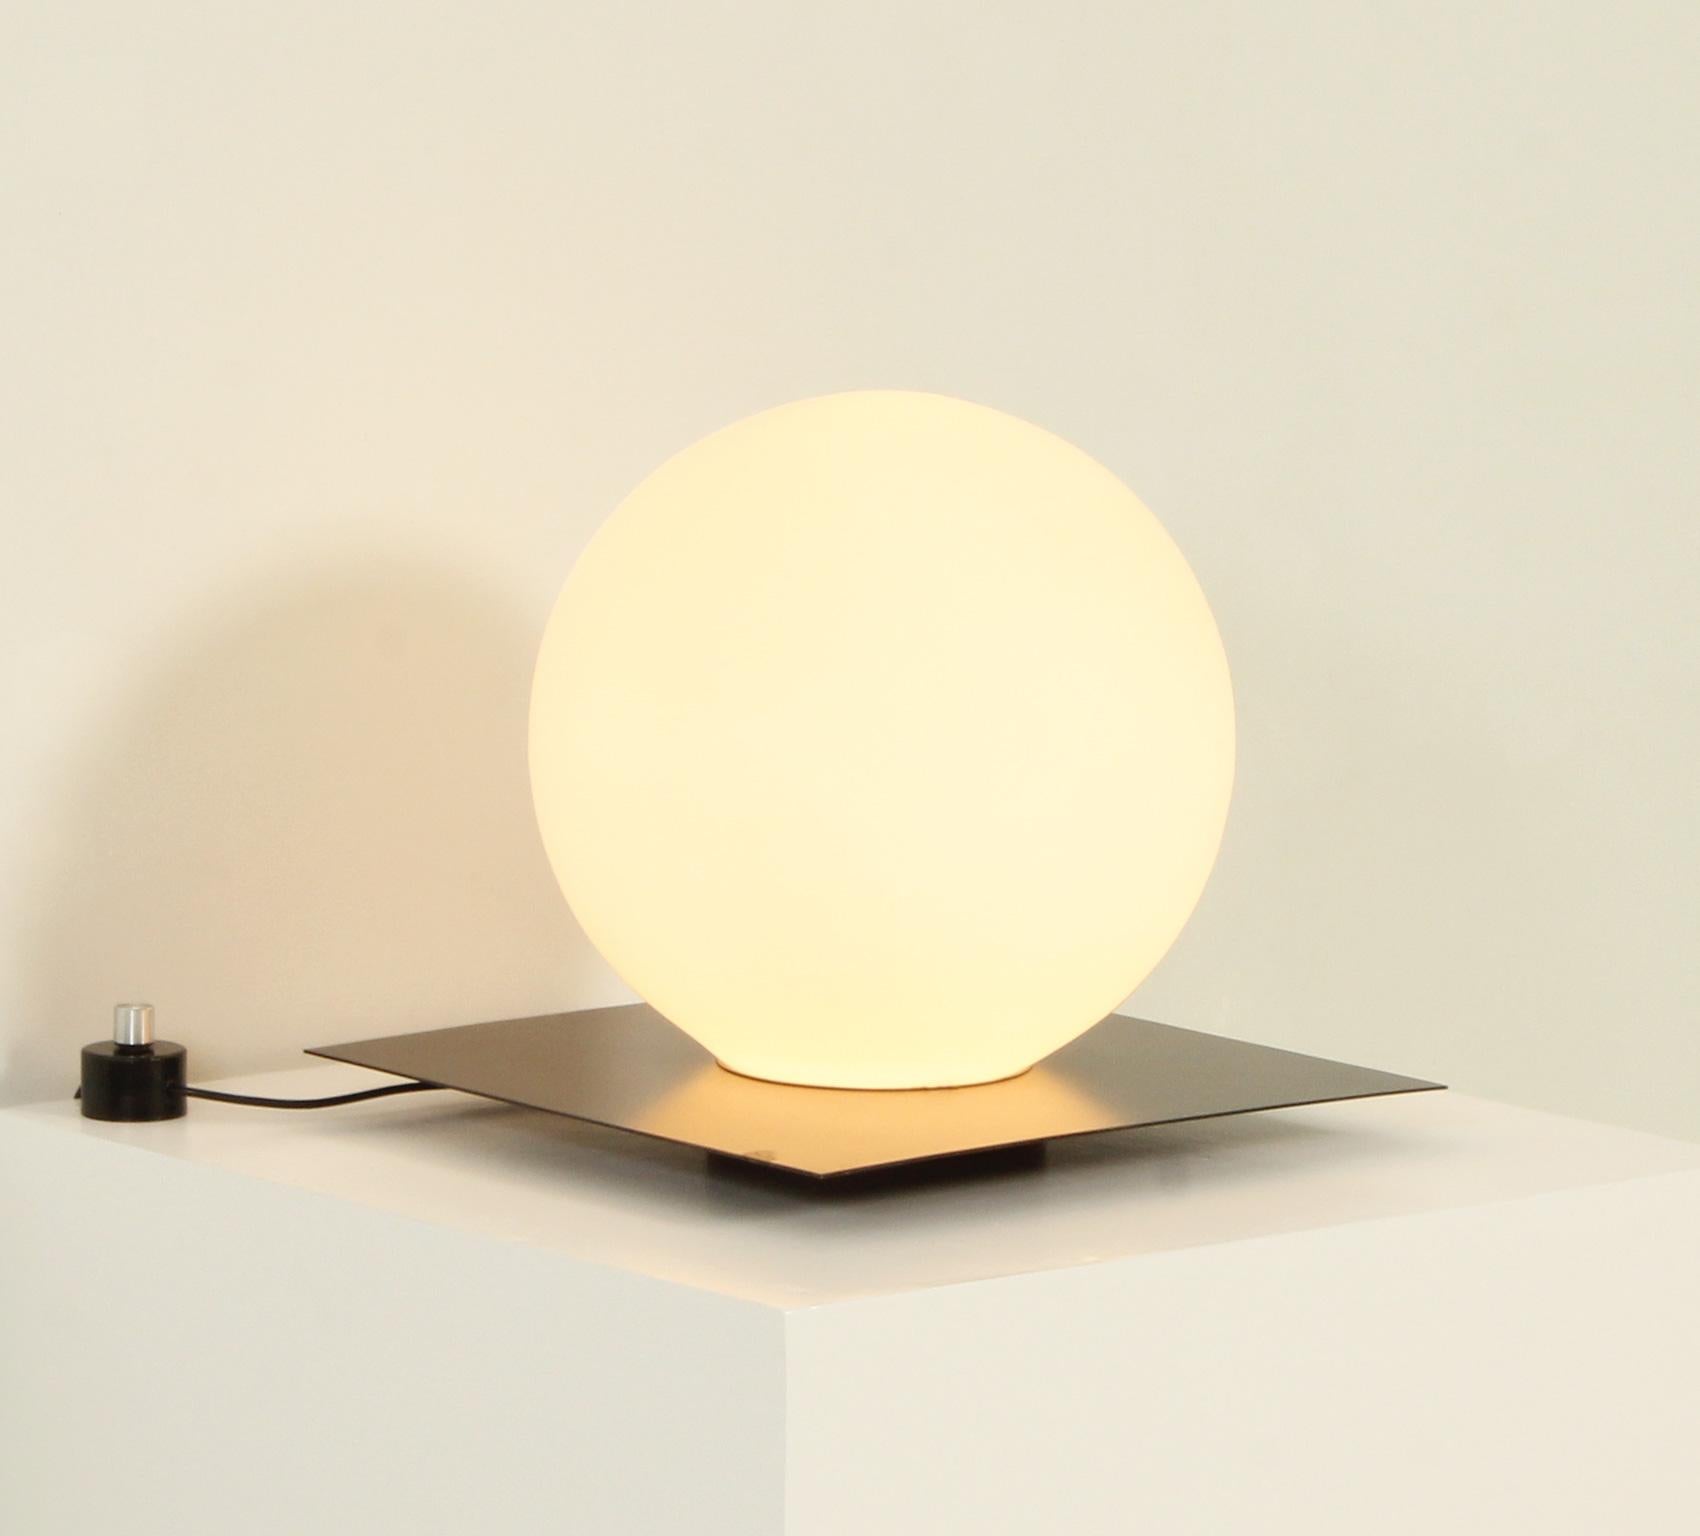 Grande lampe de table produite par Carpyen, Espagne, années 1970. Design minimal avec une base en métal noir et un globe en verre opale soutenu à la base. L'intensité lumineuse peut être régulée.